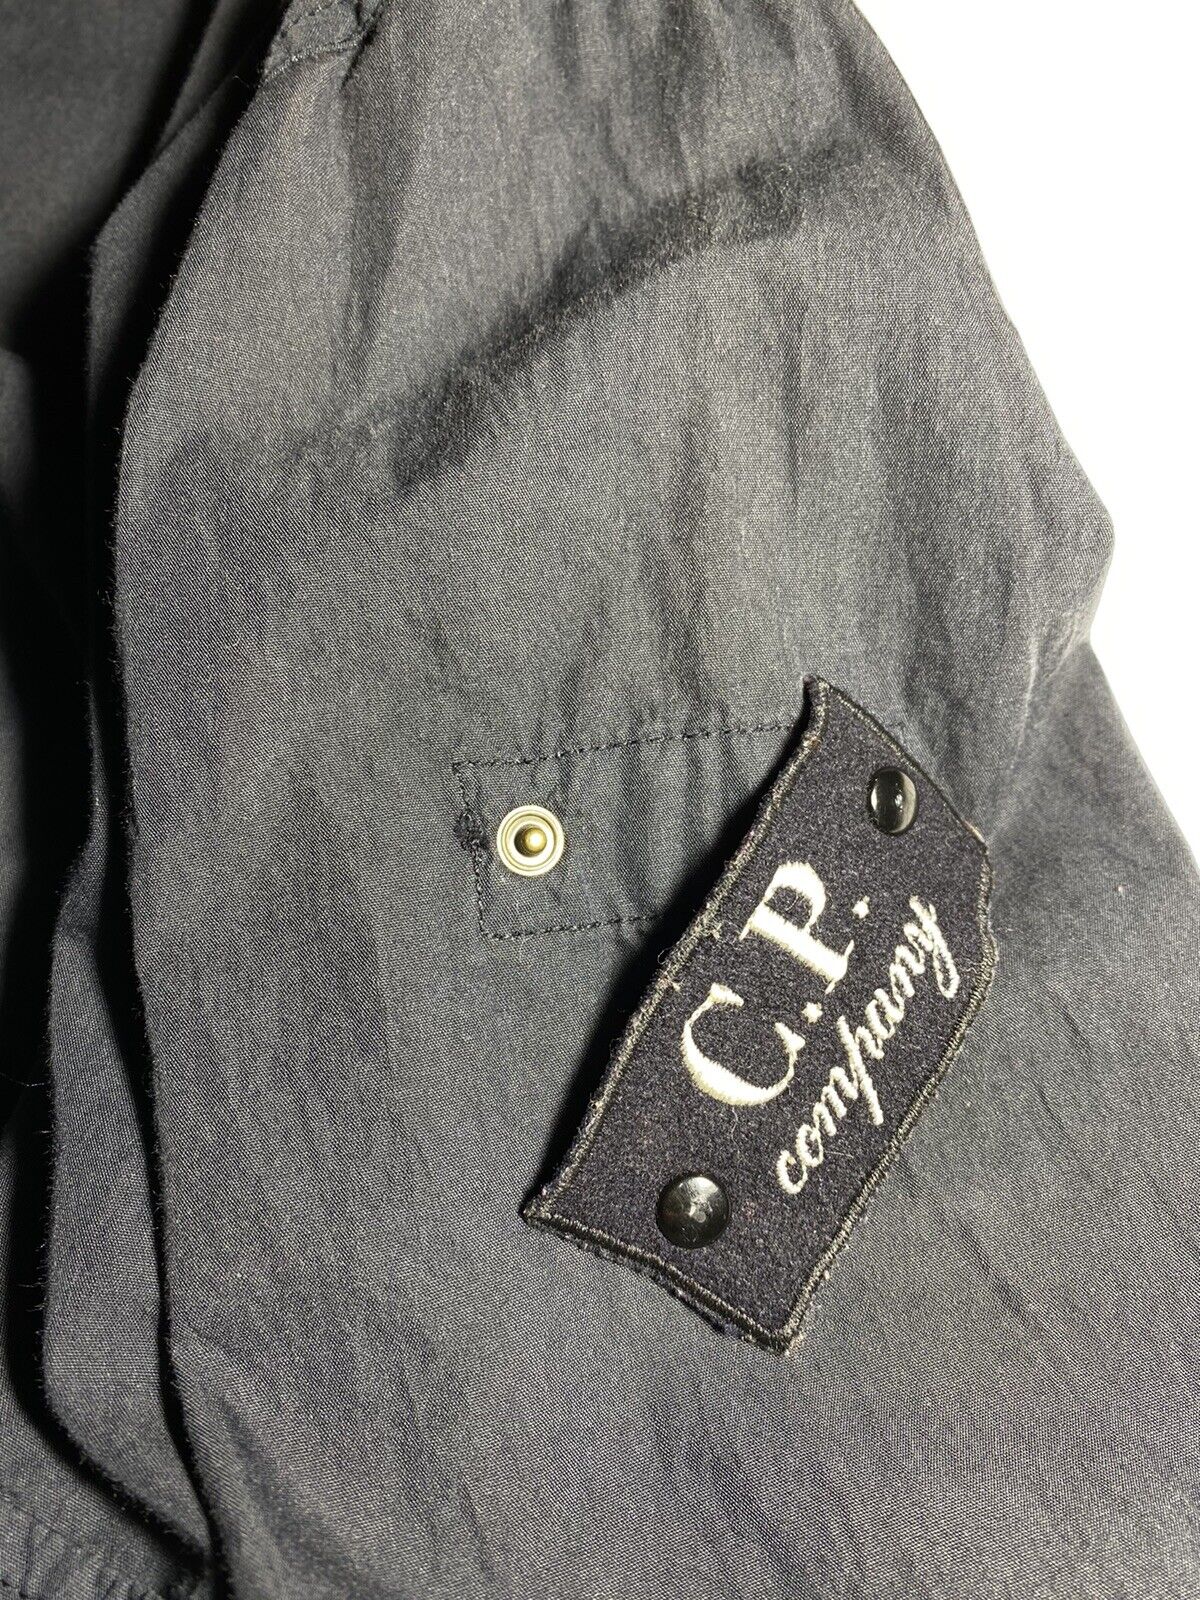 C.P. Company 1998 Vintage jacket size 12/152 WMNS /JUNIOR